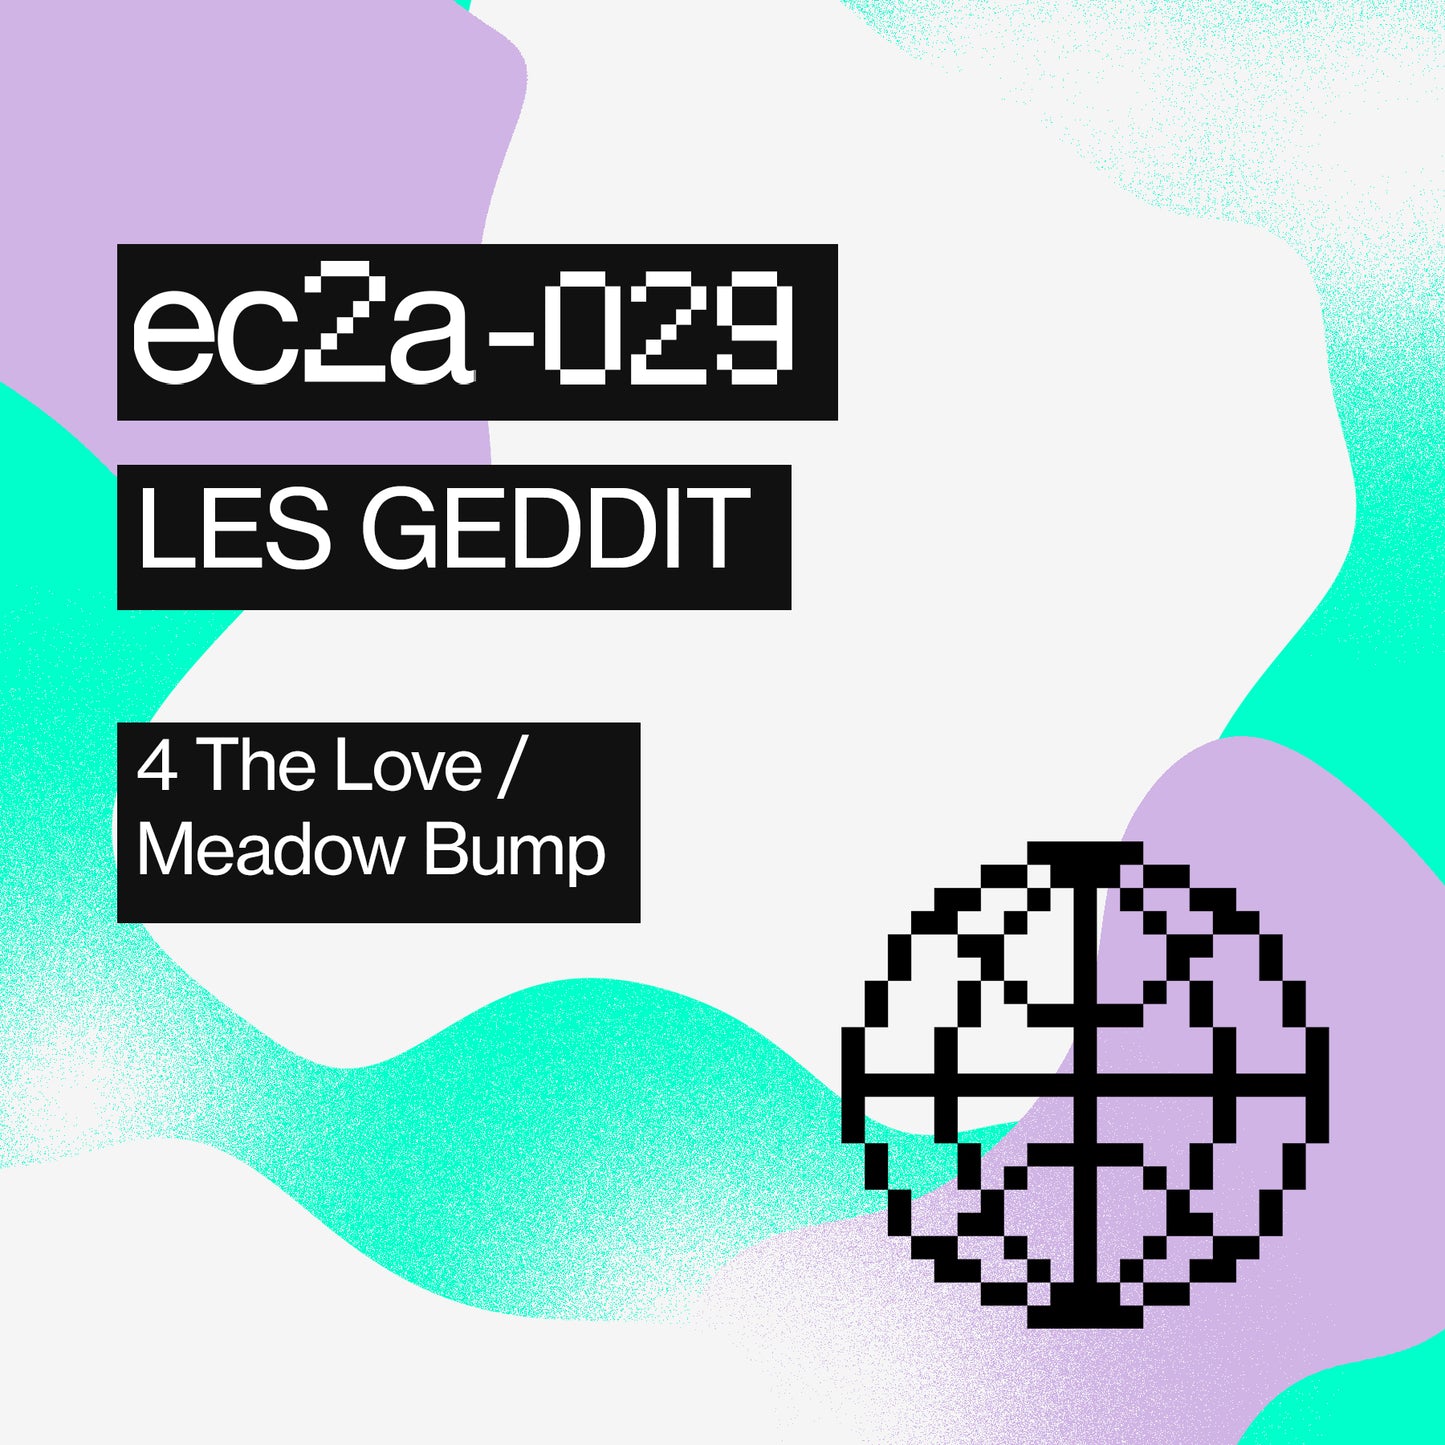 [EC2A-029] Les Geddit